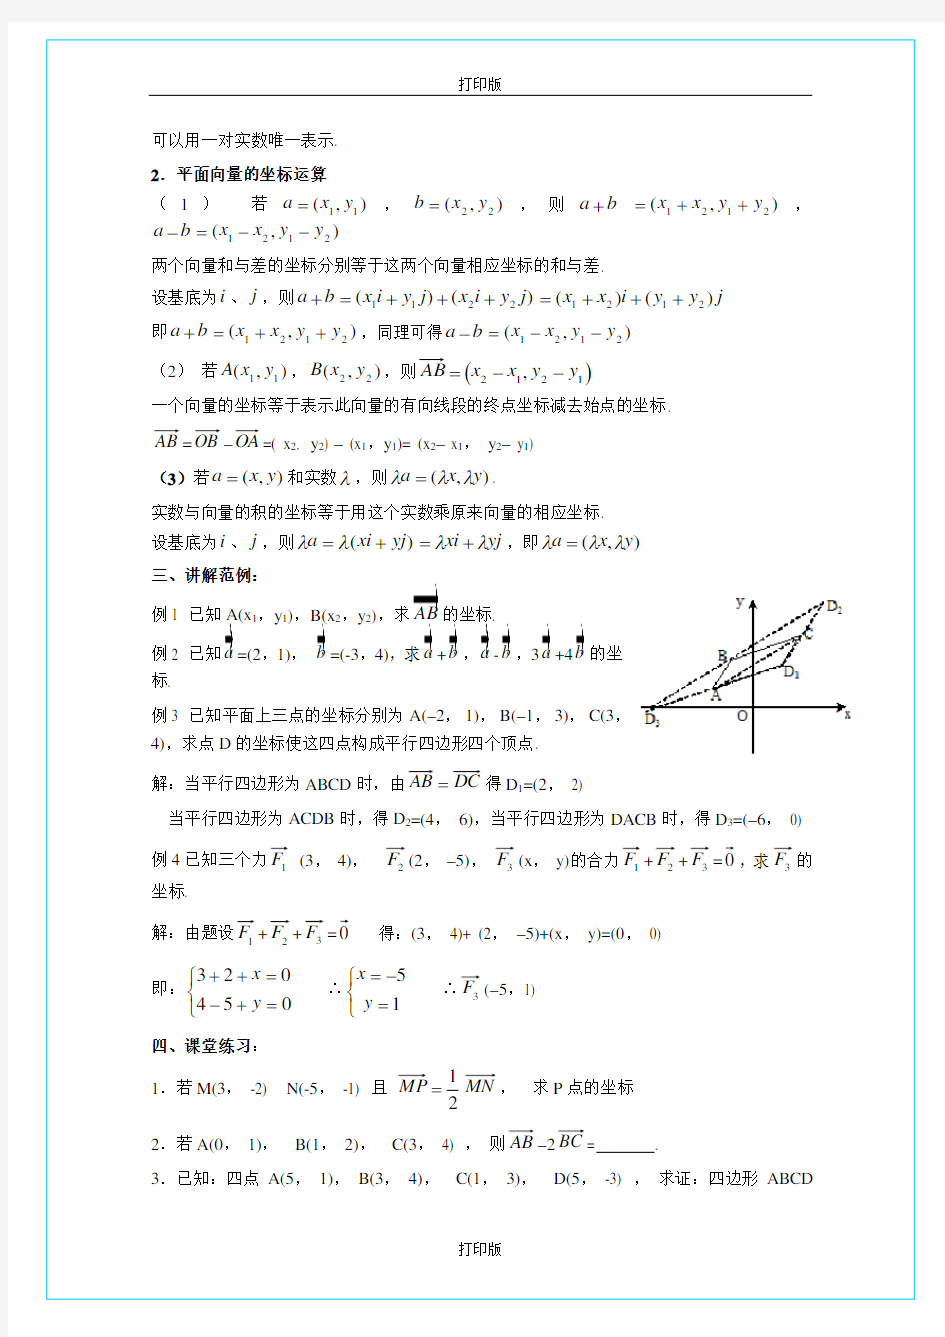 苏教版数学高一《平面向量的正交分解和坐标表示及运算》教学设计